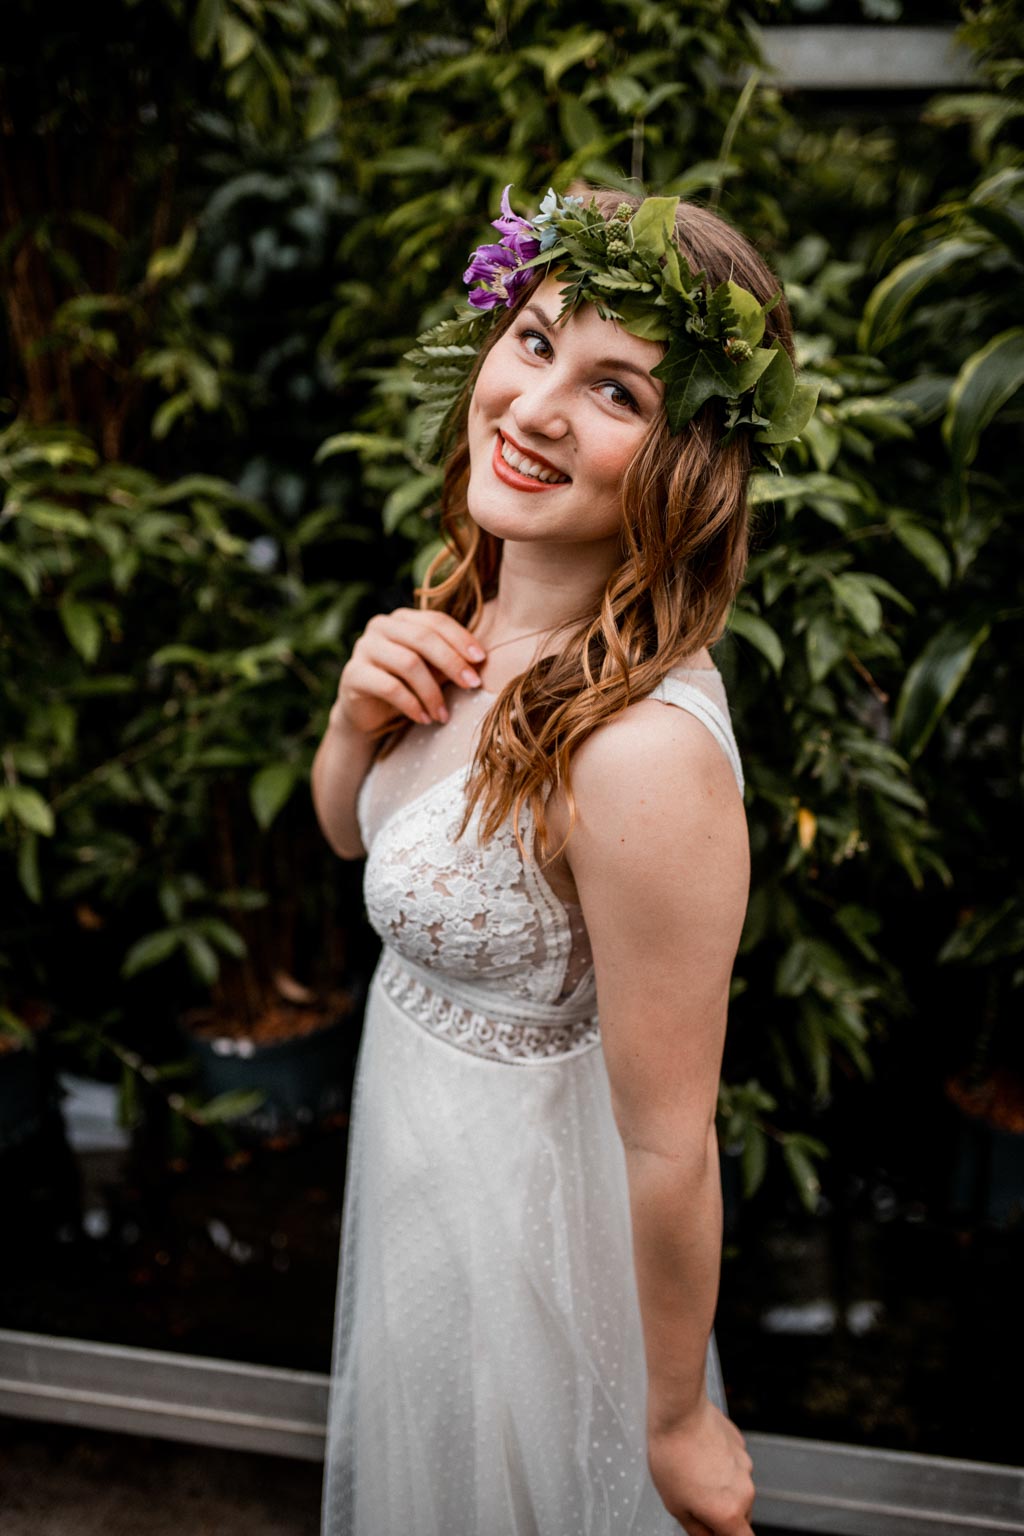 Braut mit Blumenkranz im Haar